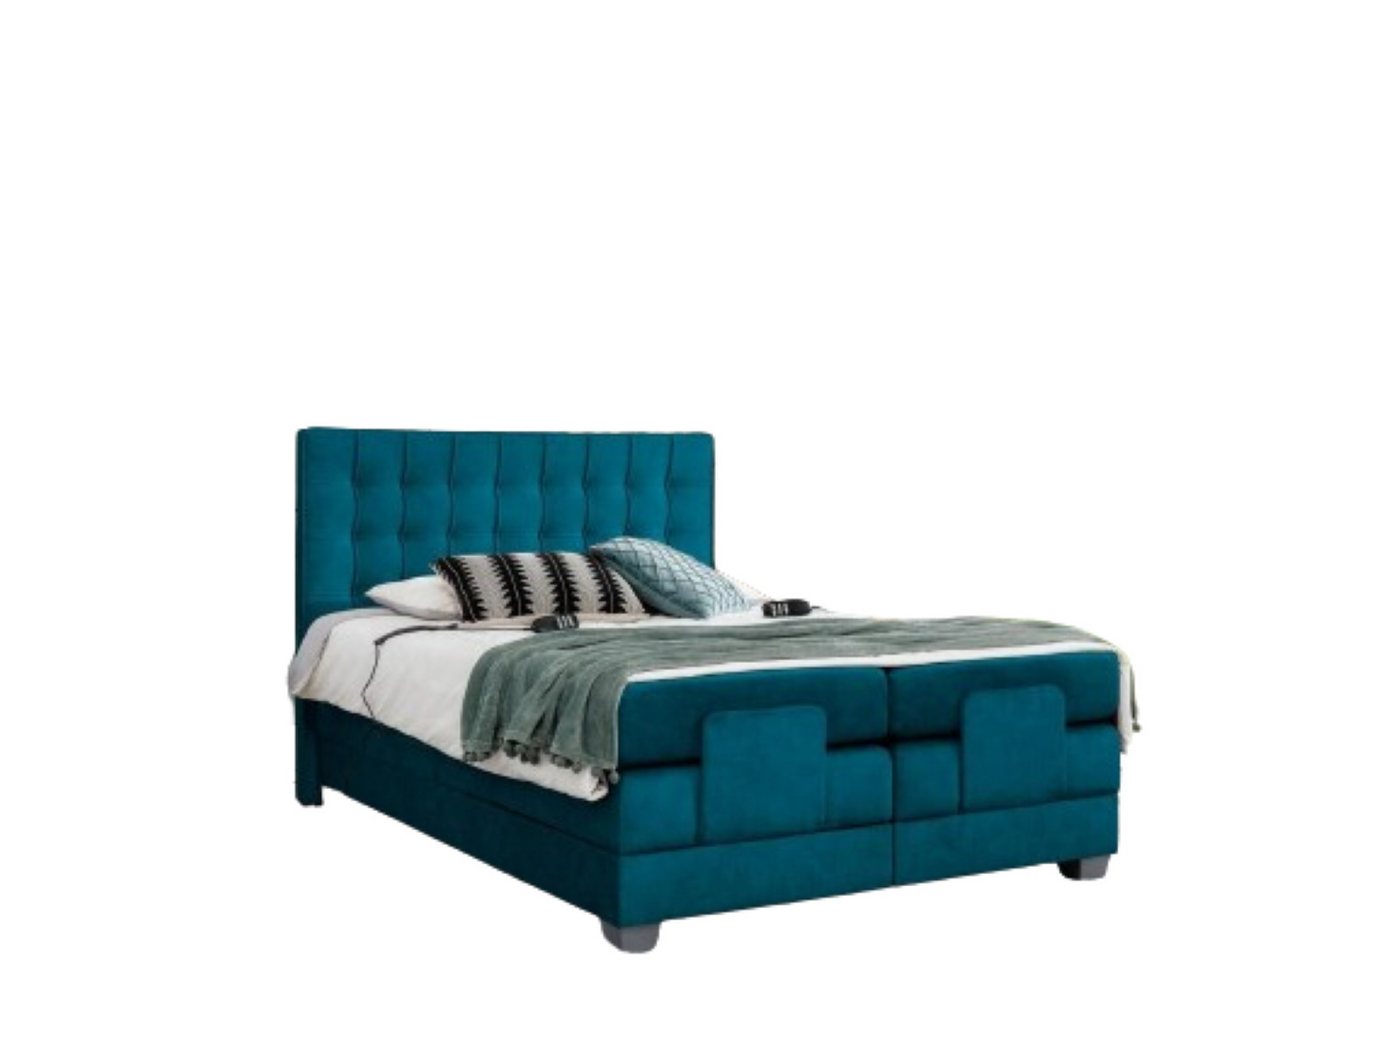 JVmoebel Bett Schlafzimmer Bett Polsterbett Modern Blau Doppelbett Design Luxus, Made in Europa von JVmoebel